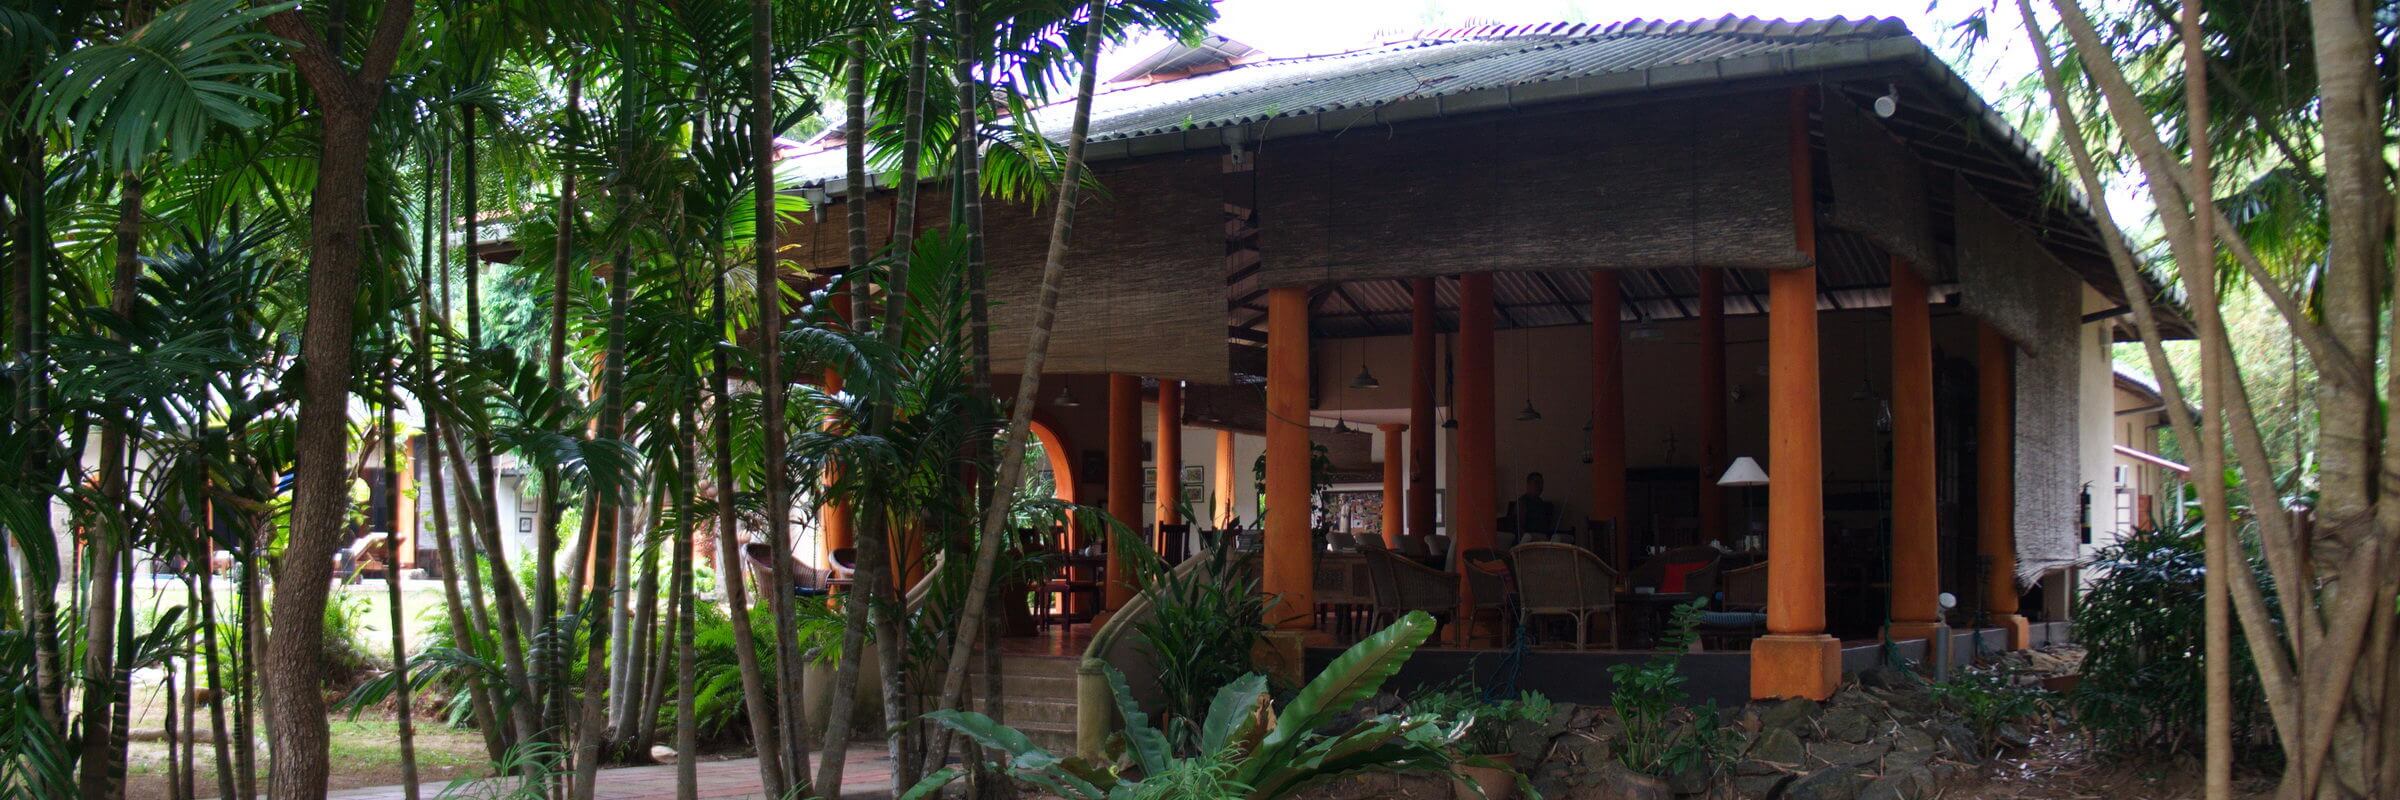 Im halboffenen Restaurant der Ging Oya Lodge kocht der Besitzer selbst und serviert seinen Gästen köstliche lokale und internationale Speisen.